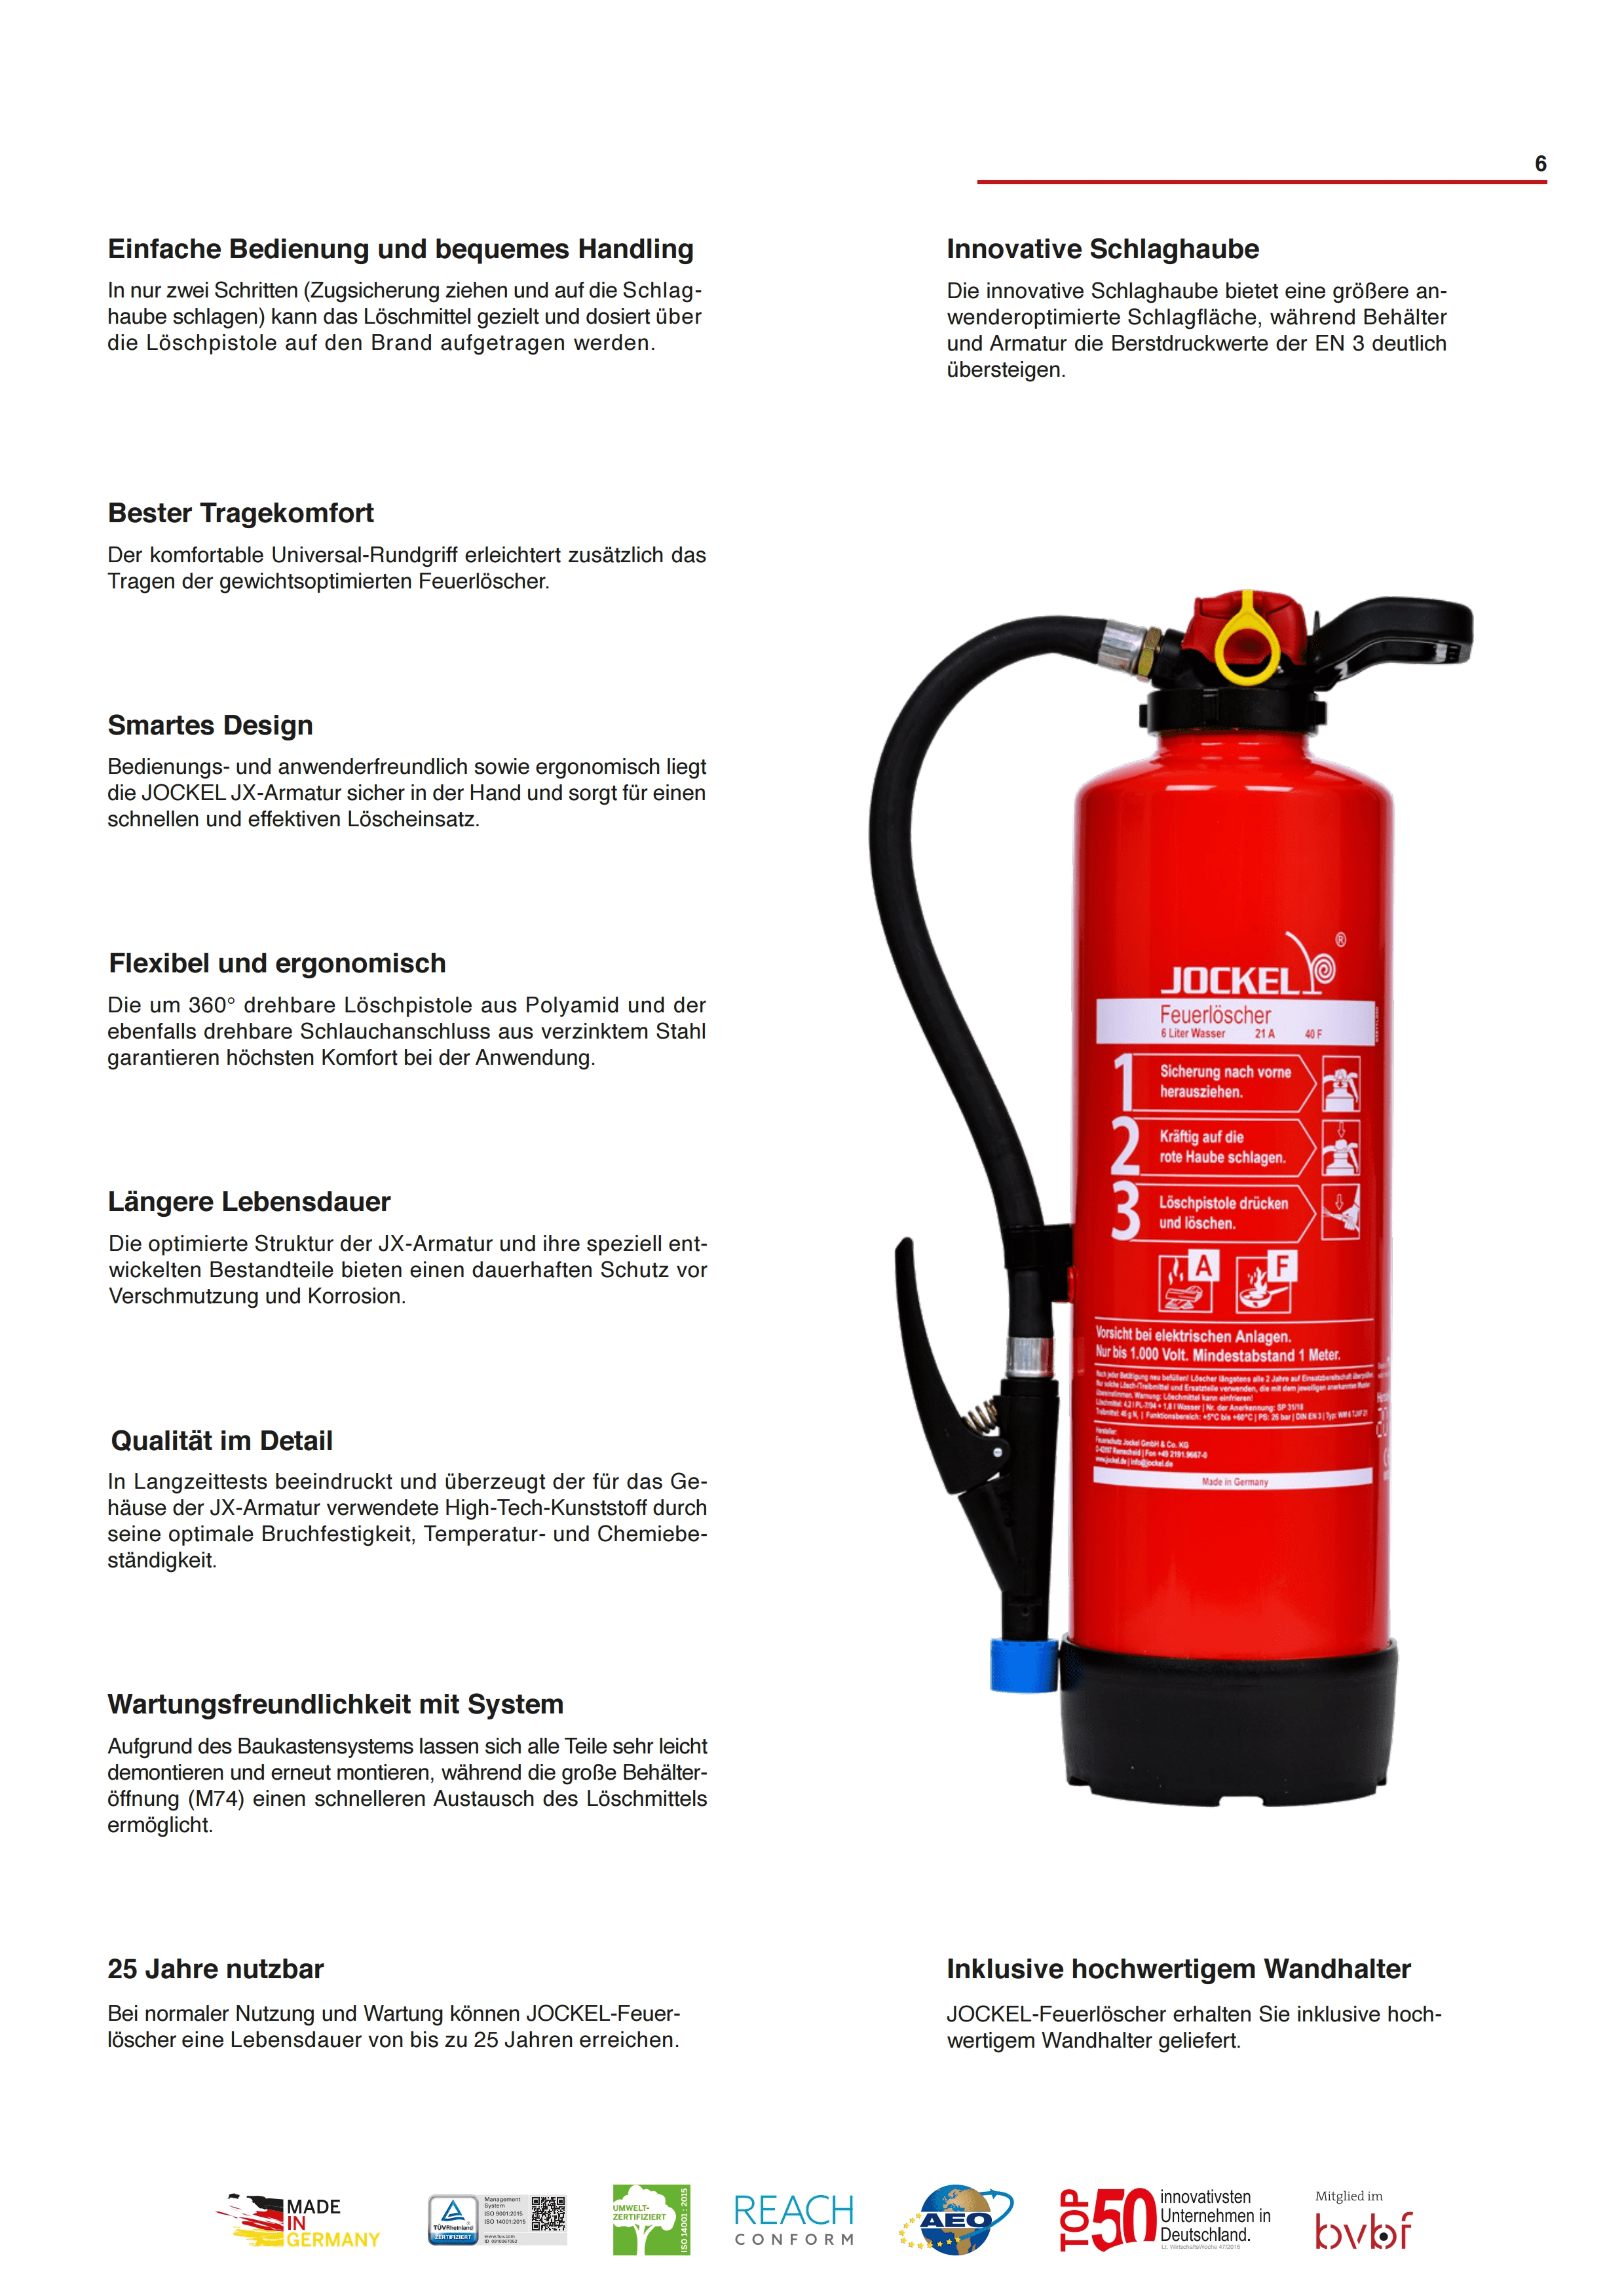 Datenblatt Wassernebel Feuerlöscher